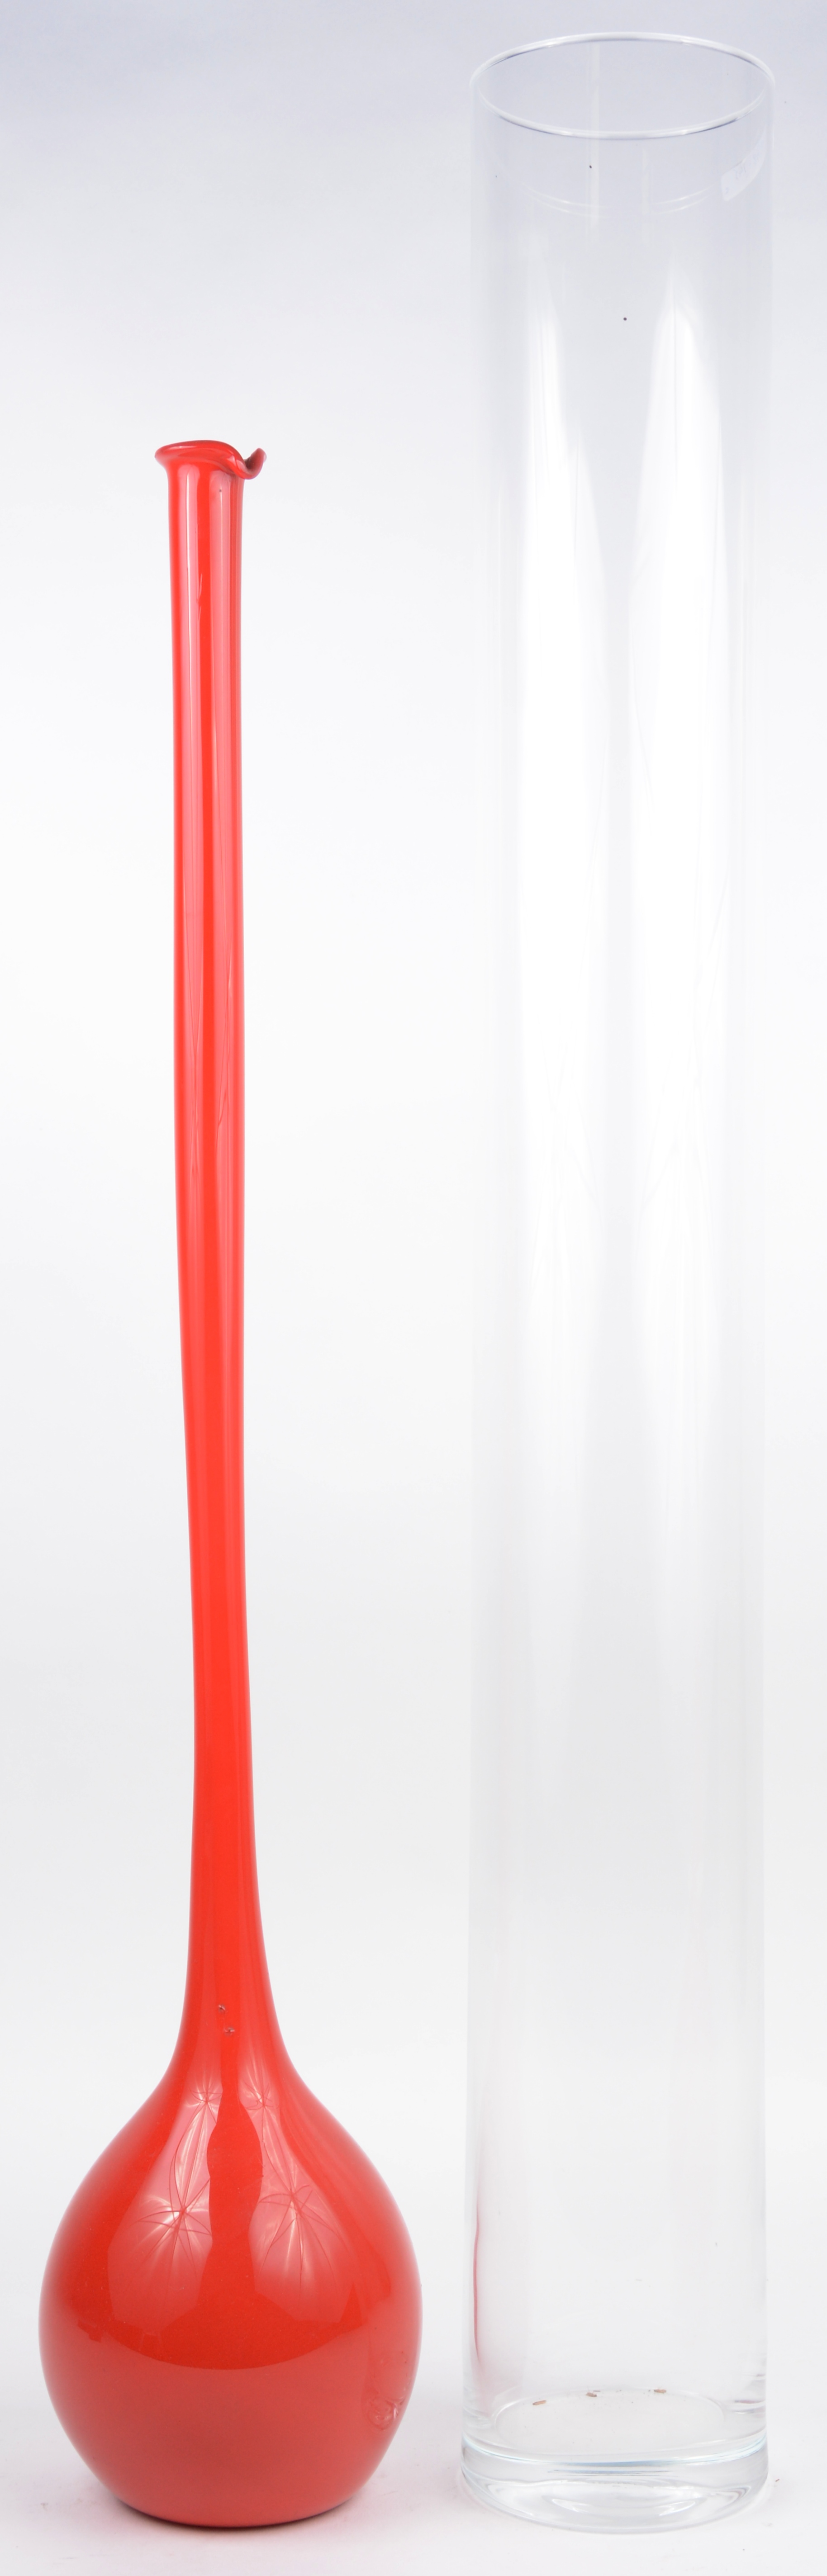 Piepen Hilarisch huurder Een lange kleurloos glazen cilindervaas en een rode bolle vaas met lange  hals. – Jordaens N.V. Veilinghuis